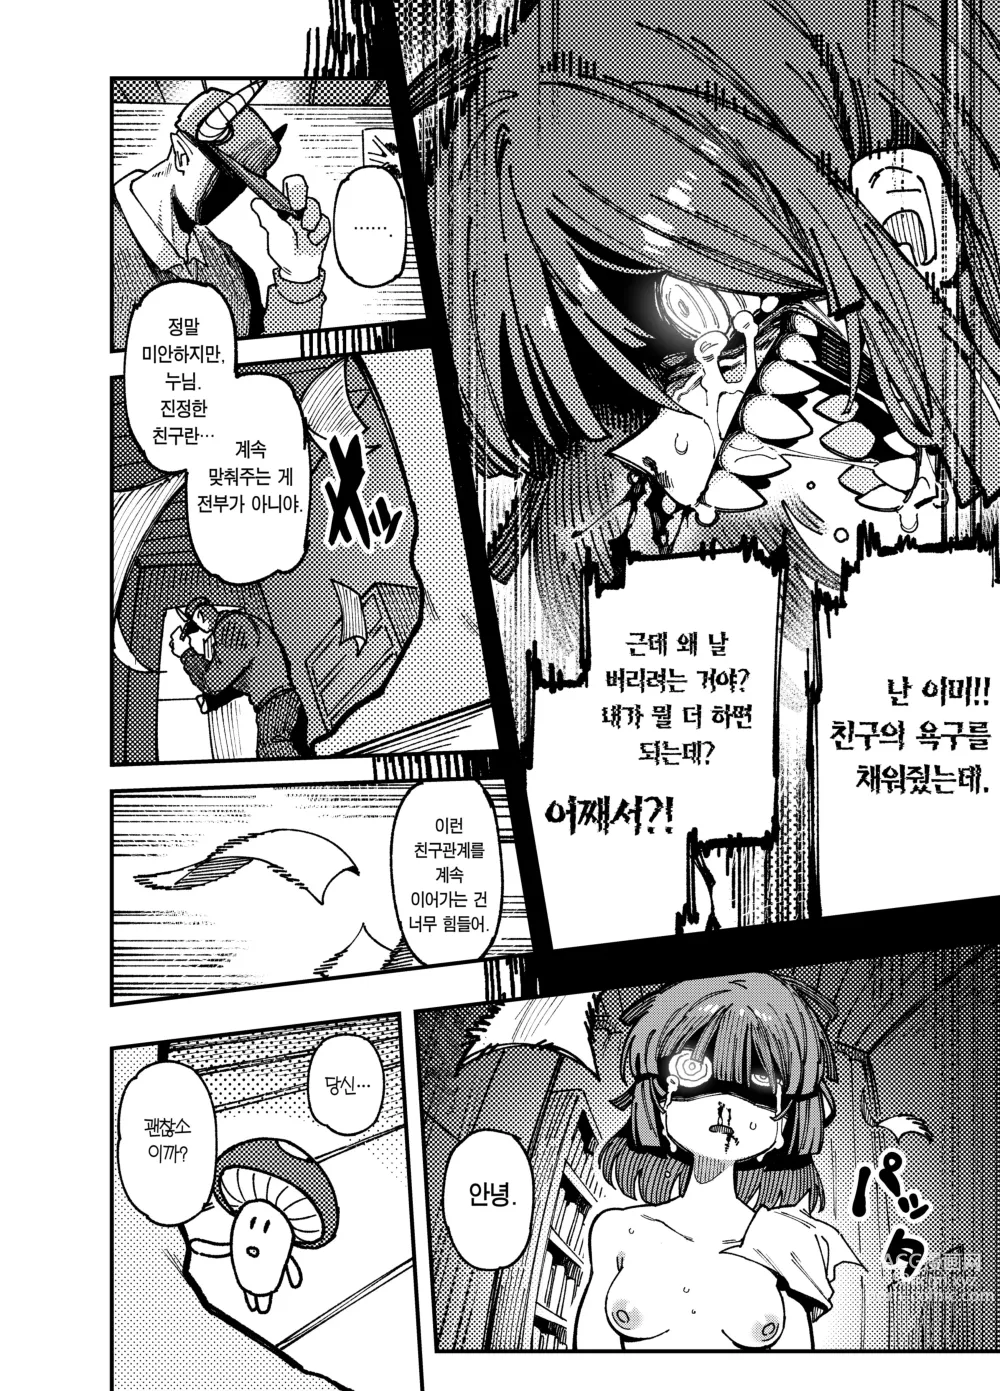 Page 52 of doujinshi 집이 너무 습해서 자란 환각을 유발하는 버섯을 잘못 먹고 발정이 나서 생긴 일들